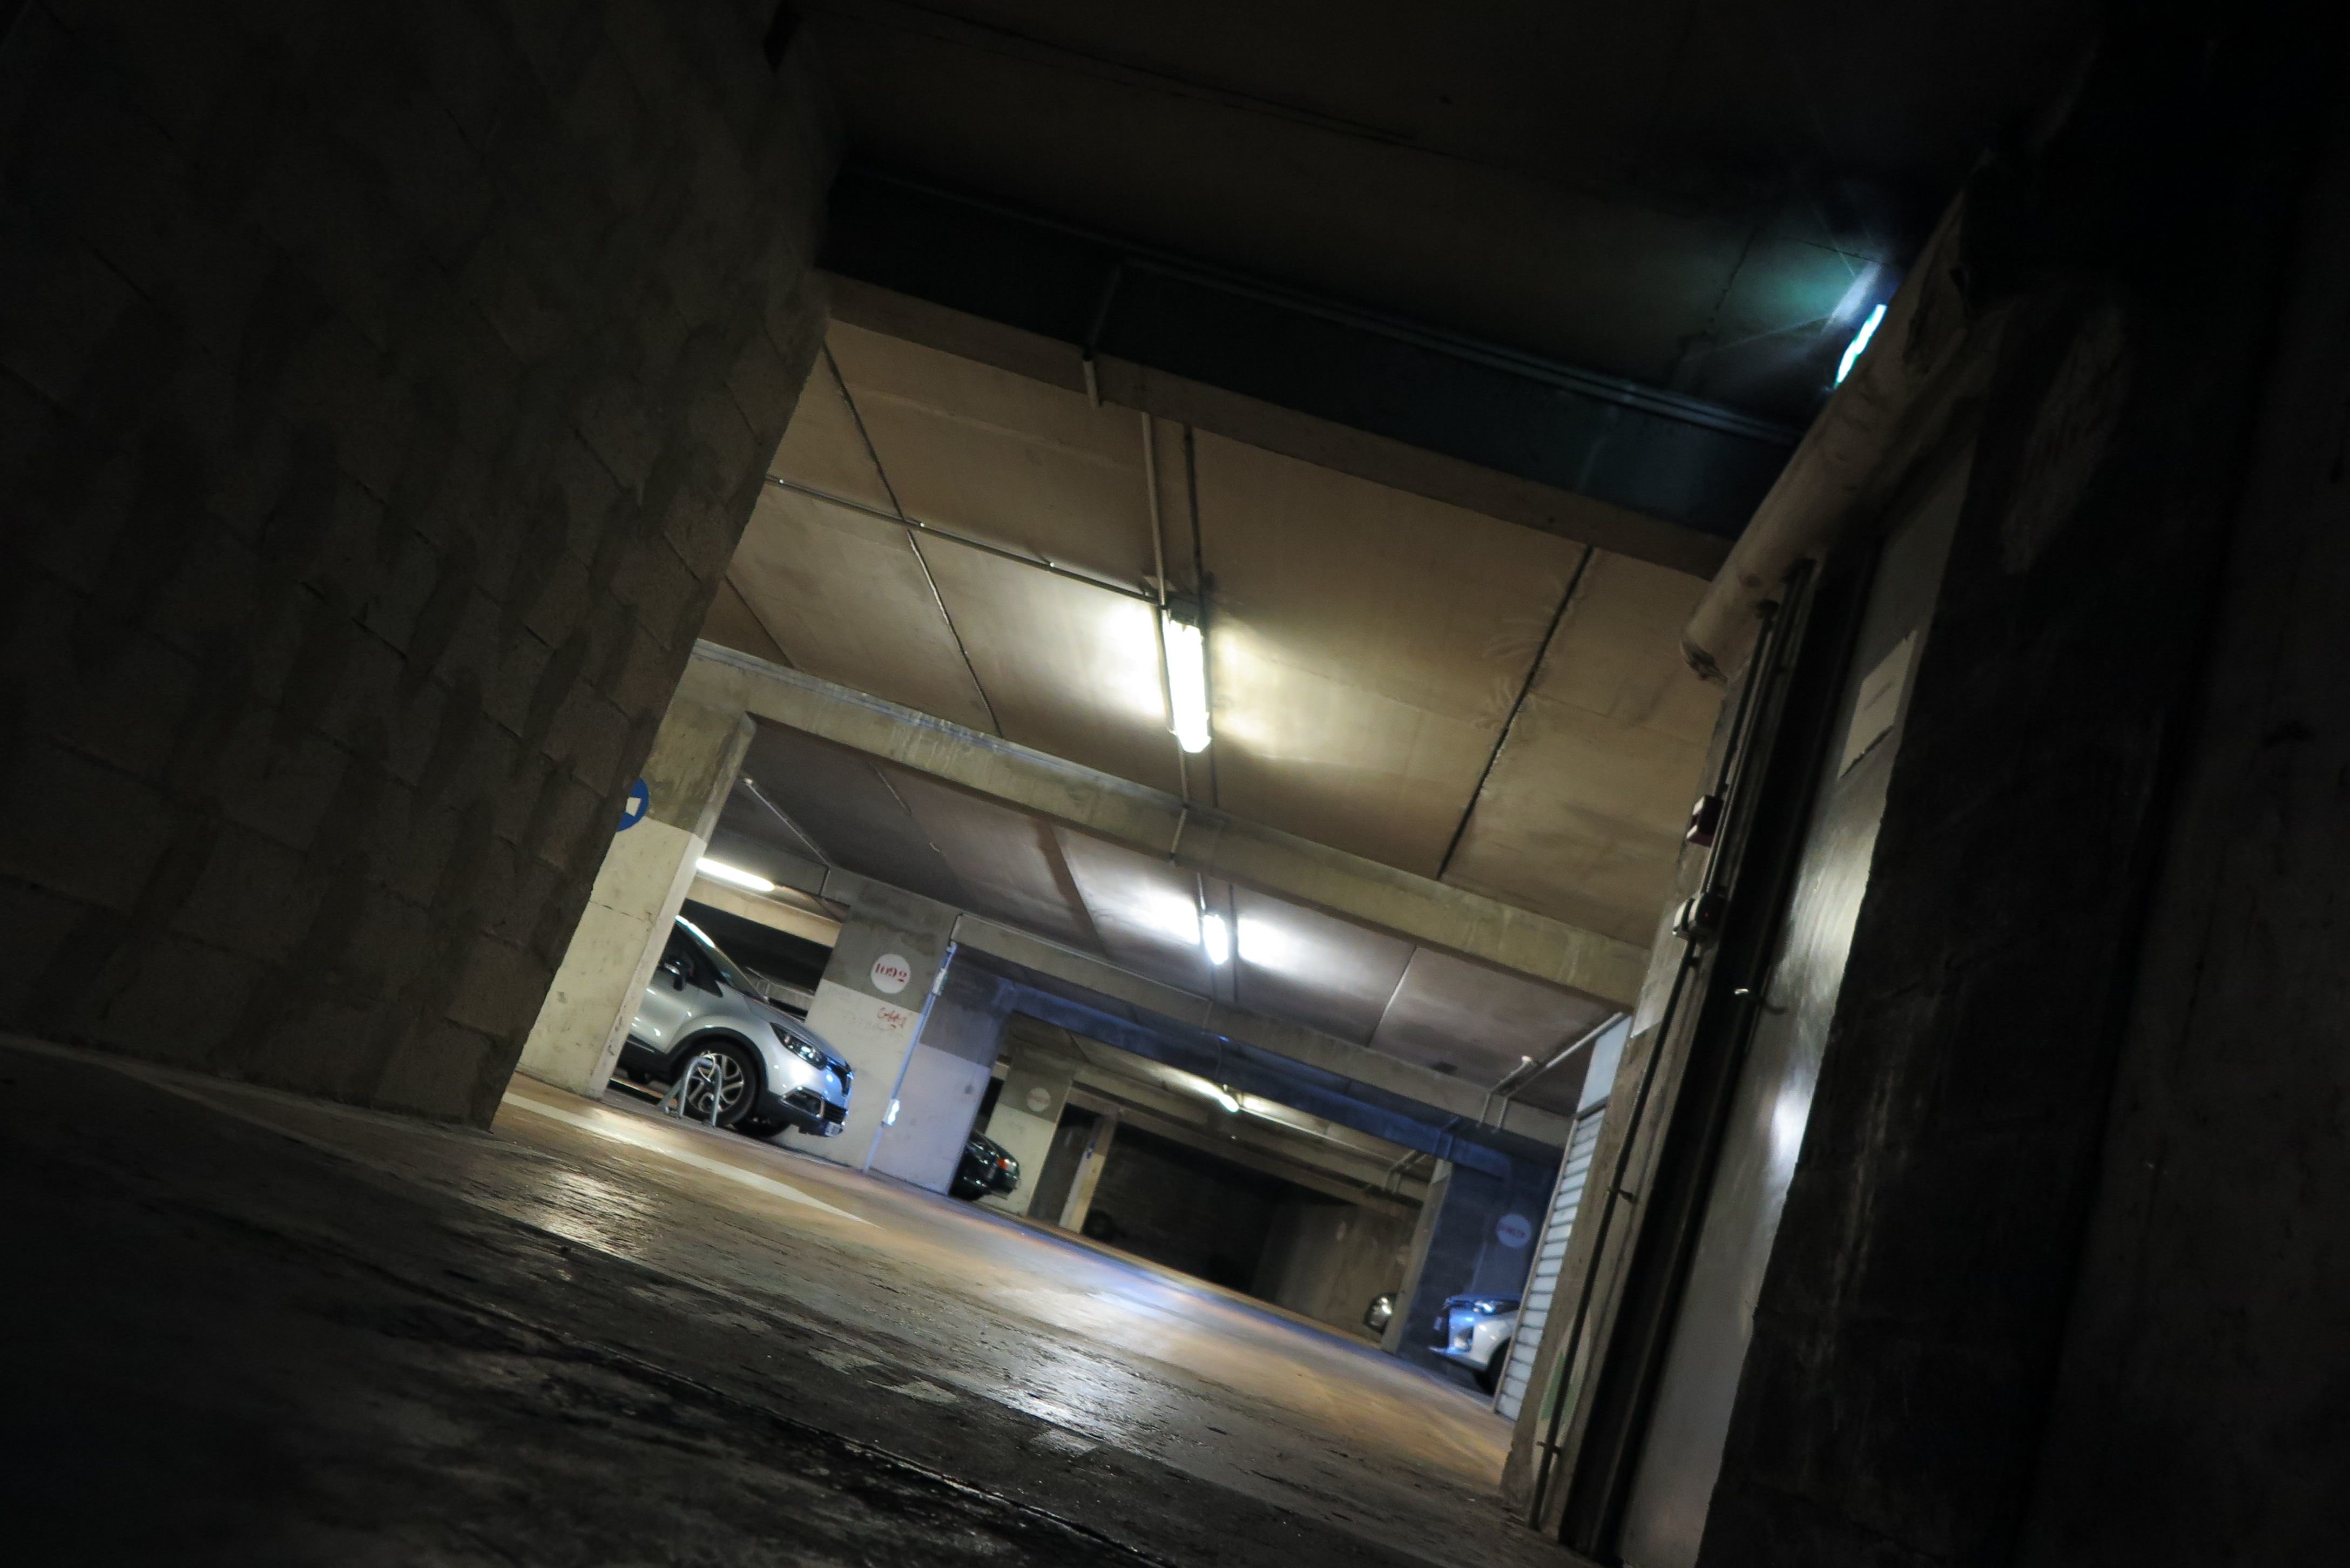 Une femme de 24 ans a été agressée et violée dans le parking sous-terrain de sa résidence durant la nuit de lundi à mardi à Courbevoie (Hauts-de-Seine). (Illustration). LP/F.L.